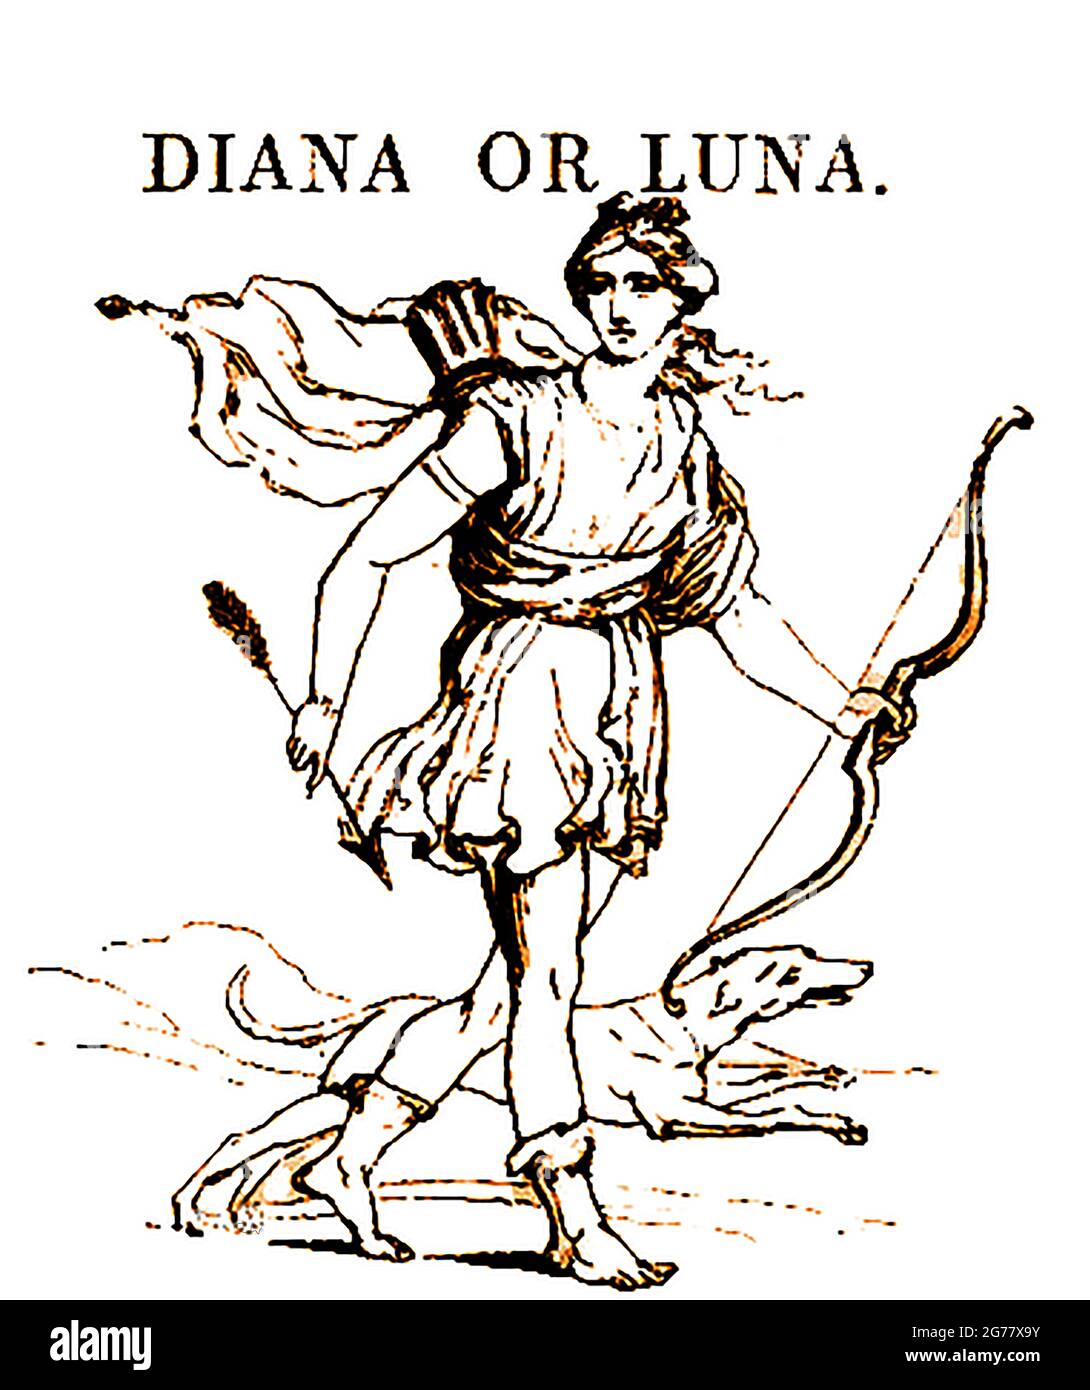 Eine Darstellung der griechischen und römischen mythologischen Figur Diana (manchmal auch die Jägergöttin genannt) aus dem Jahr 1839, die im modernen römischen Neopaganismus, in Stregheria (die alte Religion) und in Wicca immer noch verehrt wird. Zu Diana gehören Artemis, Egeria, die Wassernymphe, Hecate, Virbius und der Mond (Luna und/oder Selene). Sie ist auch mit dem Land, der Geburt, Waldgebieten, Kreuzungen (insbesondere 3-Wege-Kreuzungen), dem Weg in die Unterwelt, Stockfoto